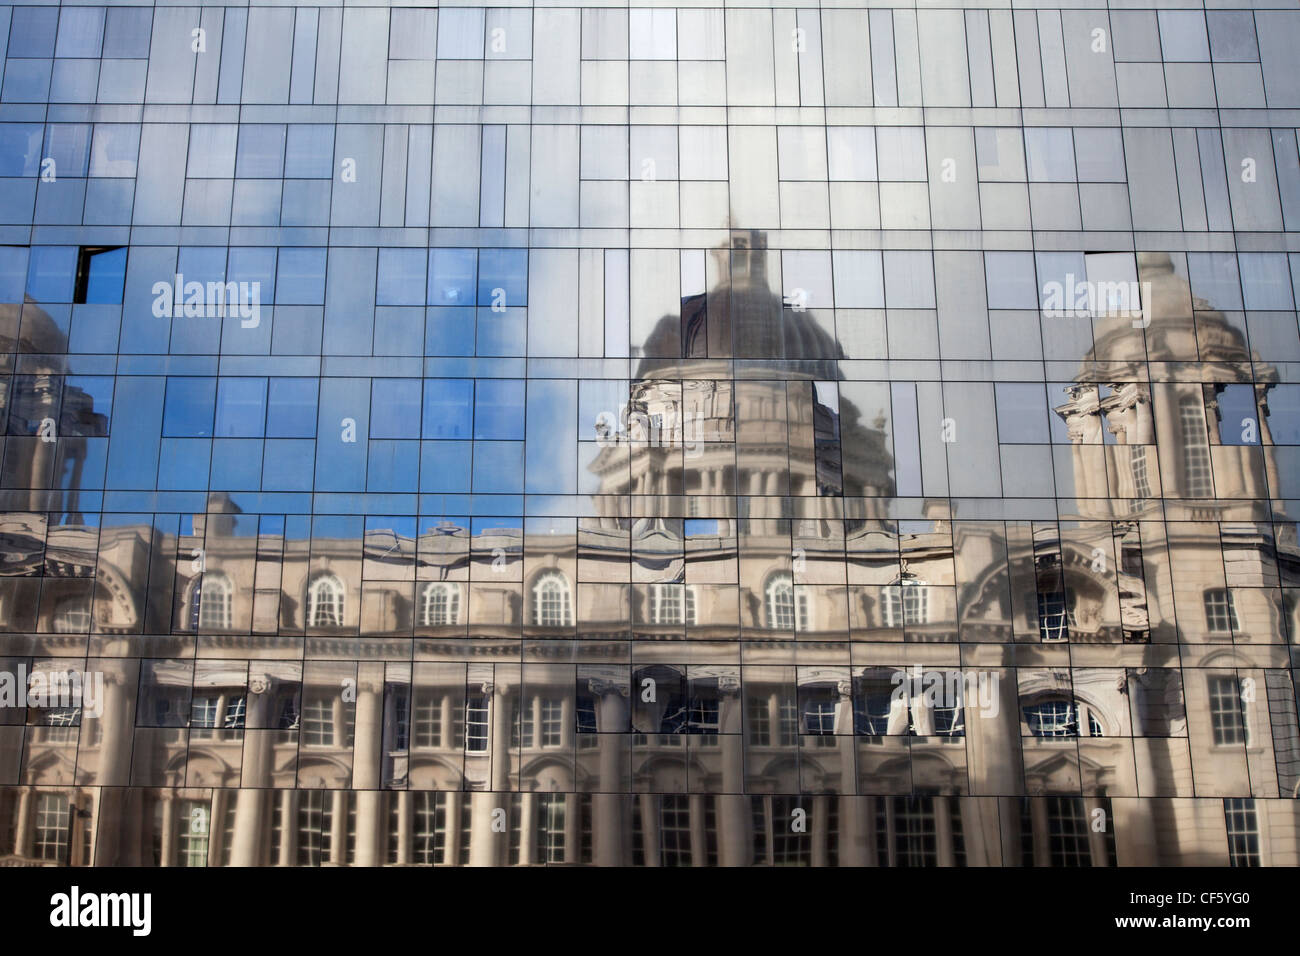 Der Hafen von Liverpool Gebäude spiegelt sich in der Glasverkleidung eines modernen Neubaus. Stockfoto